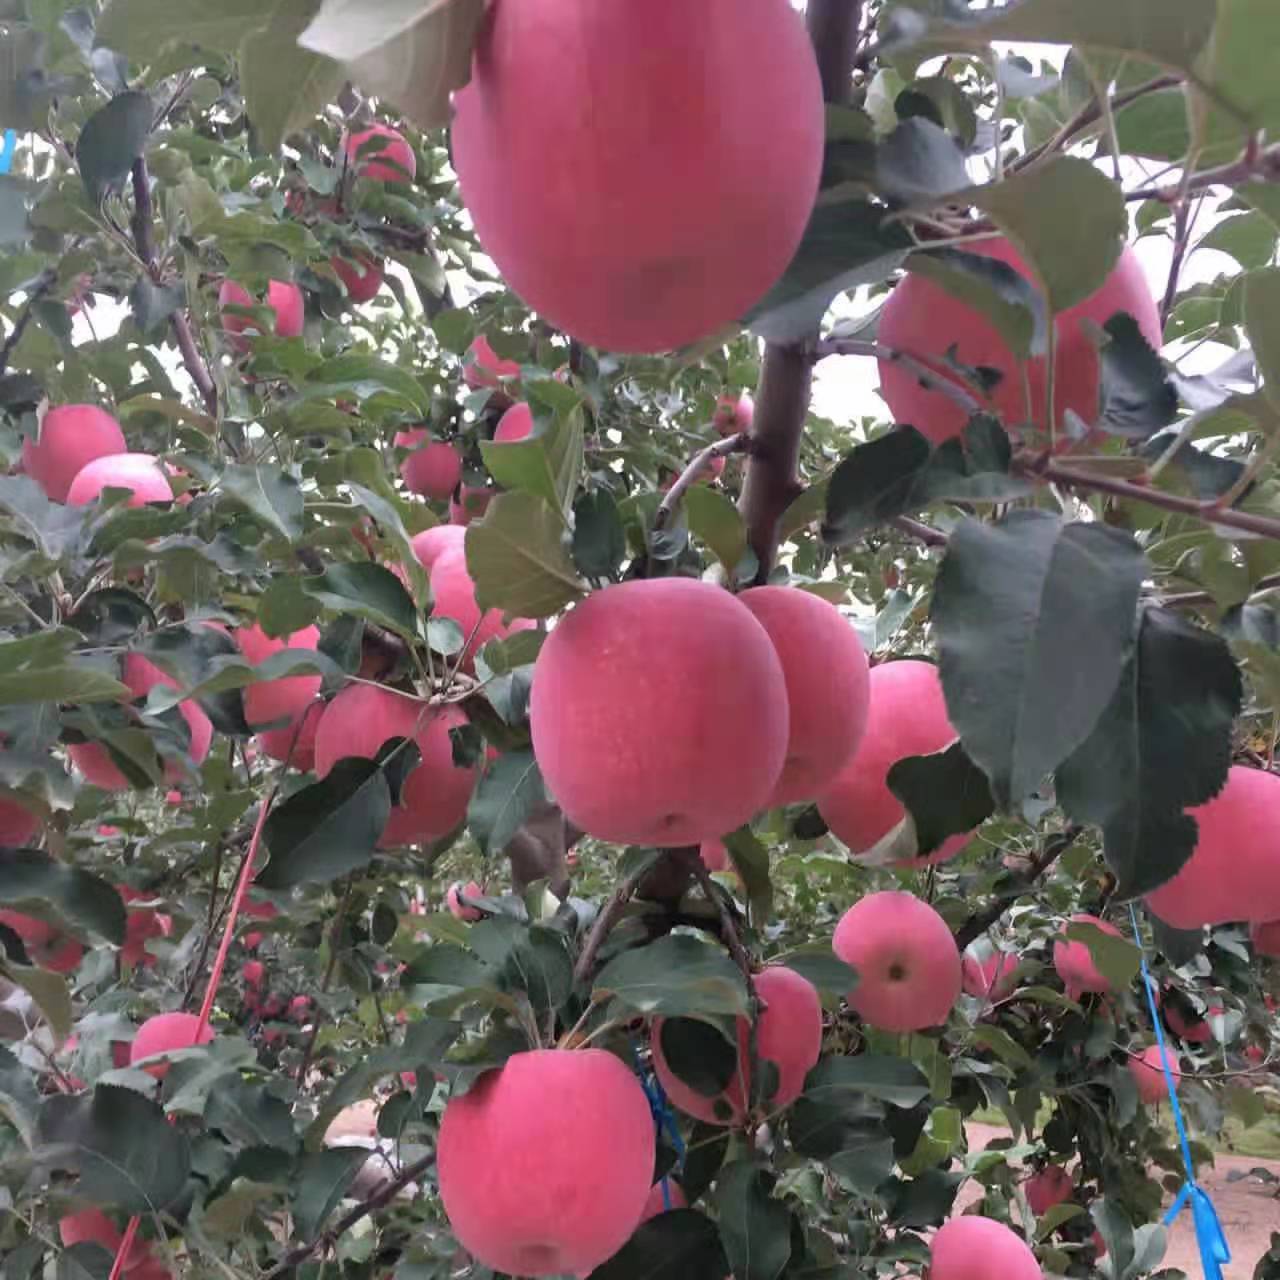 [红富士批发]红富士苹果 苹果之乡静宁仁大苹果价格100元/箱 惠农网